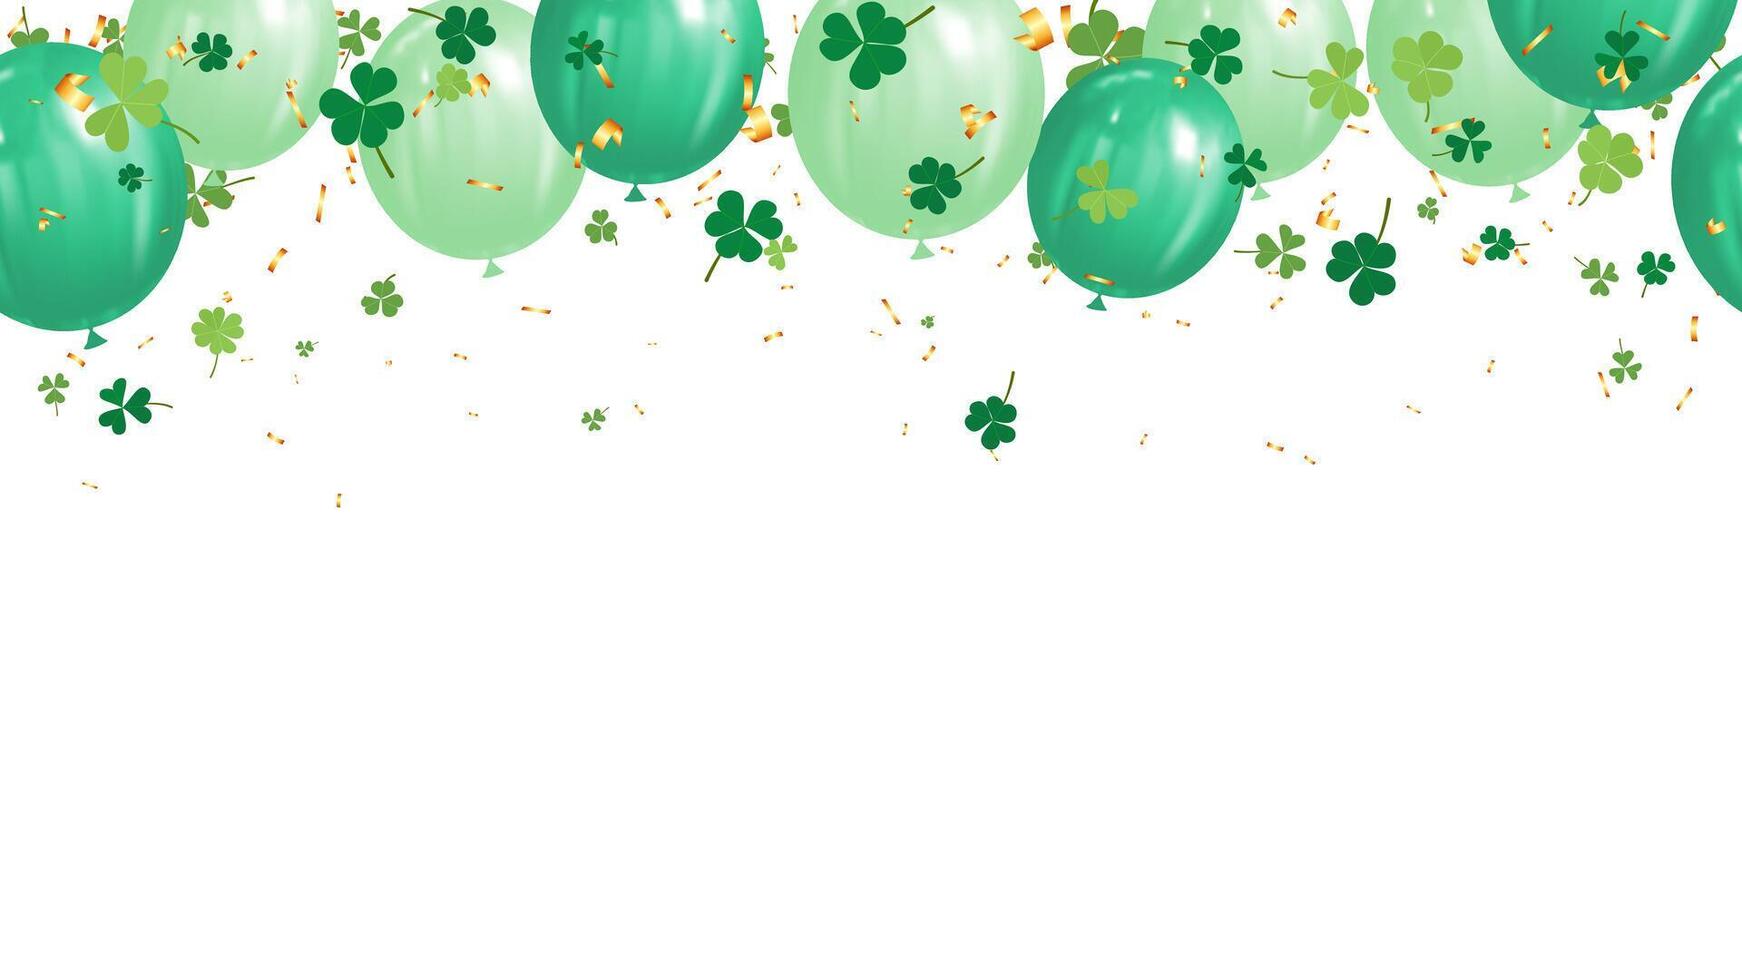 schijnloos banier groen glimmend ballonnen, goud confetti en Klaver bladeren vector illustratie voor vakantie partij